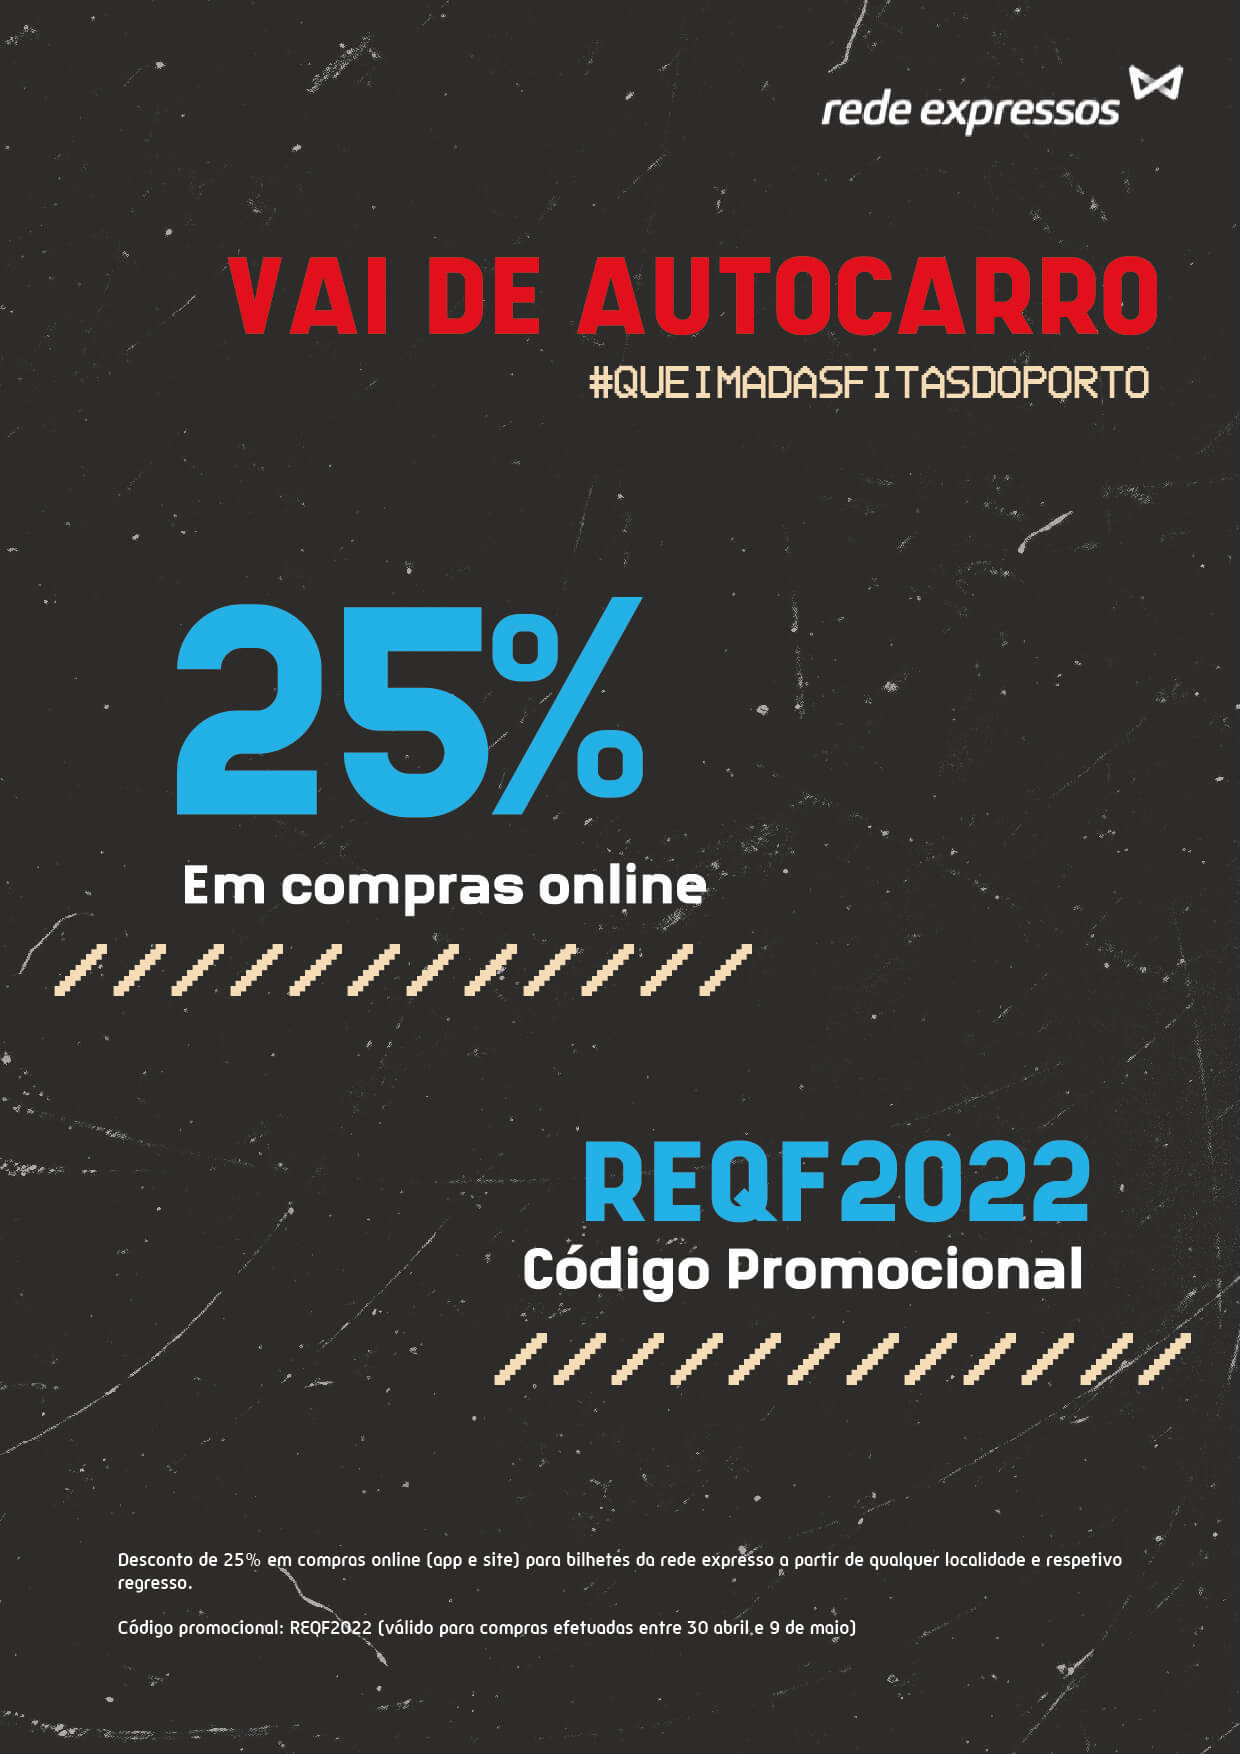 Rede Expresso - 25% em Compras Online - REQF2022